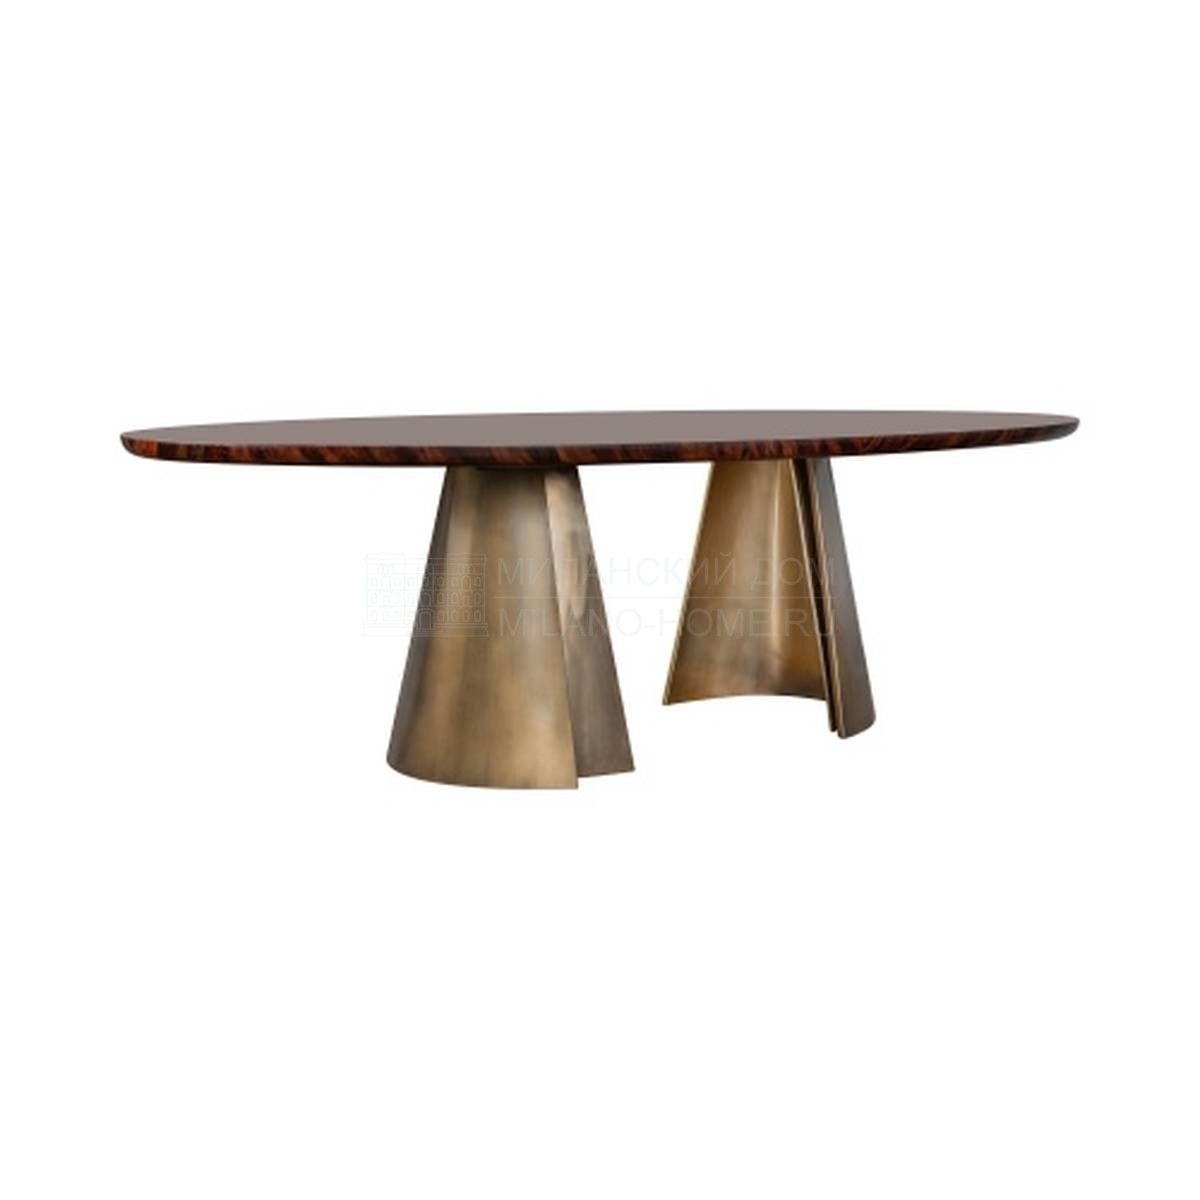 Обеденный стол Absolute table из Италии фабрики RUGIANO